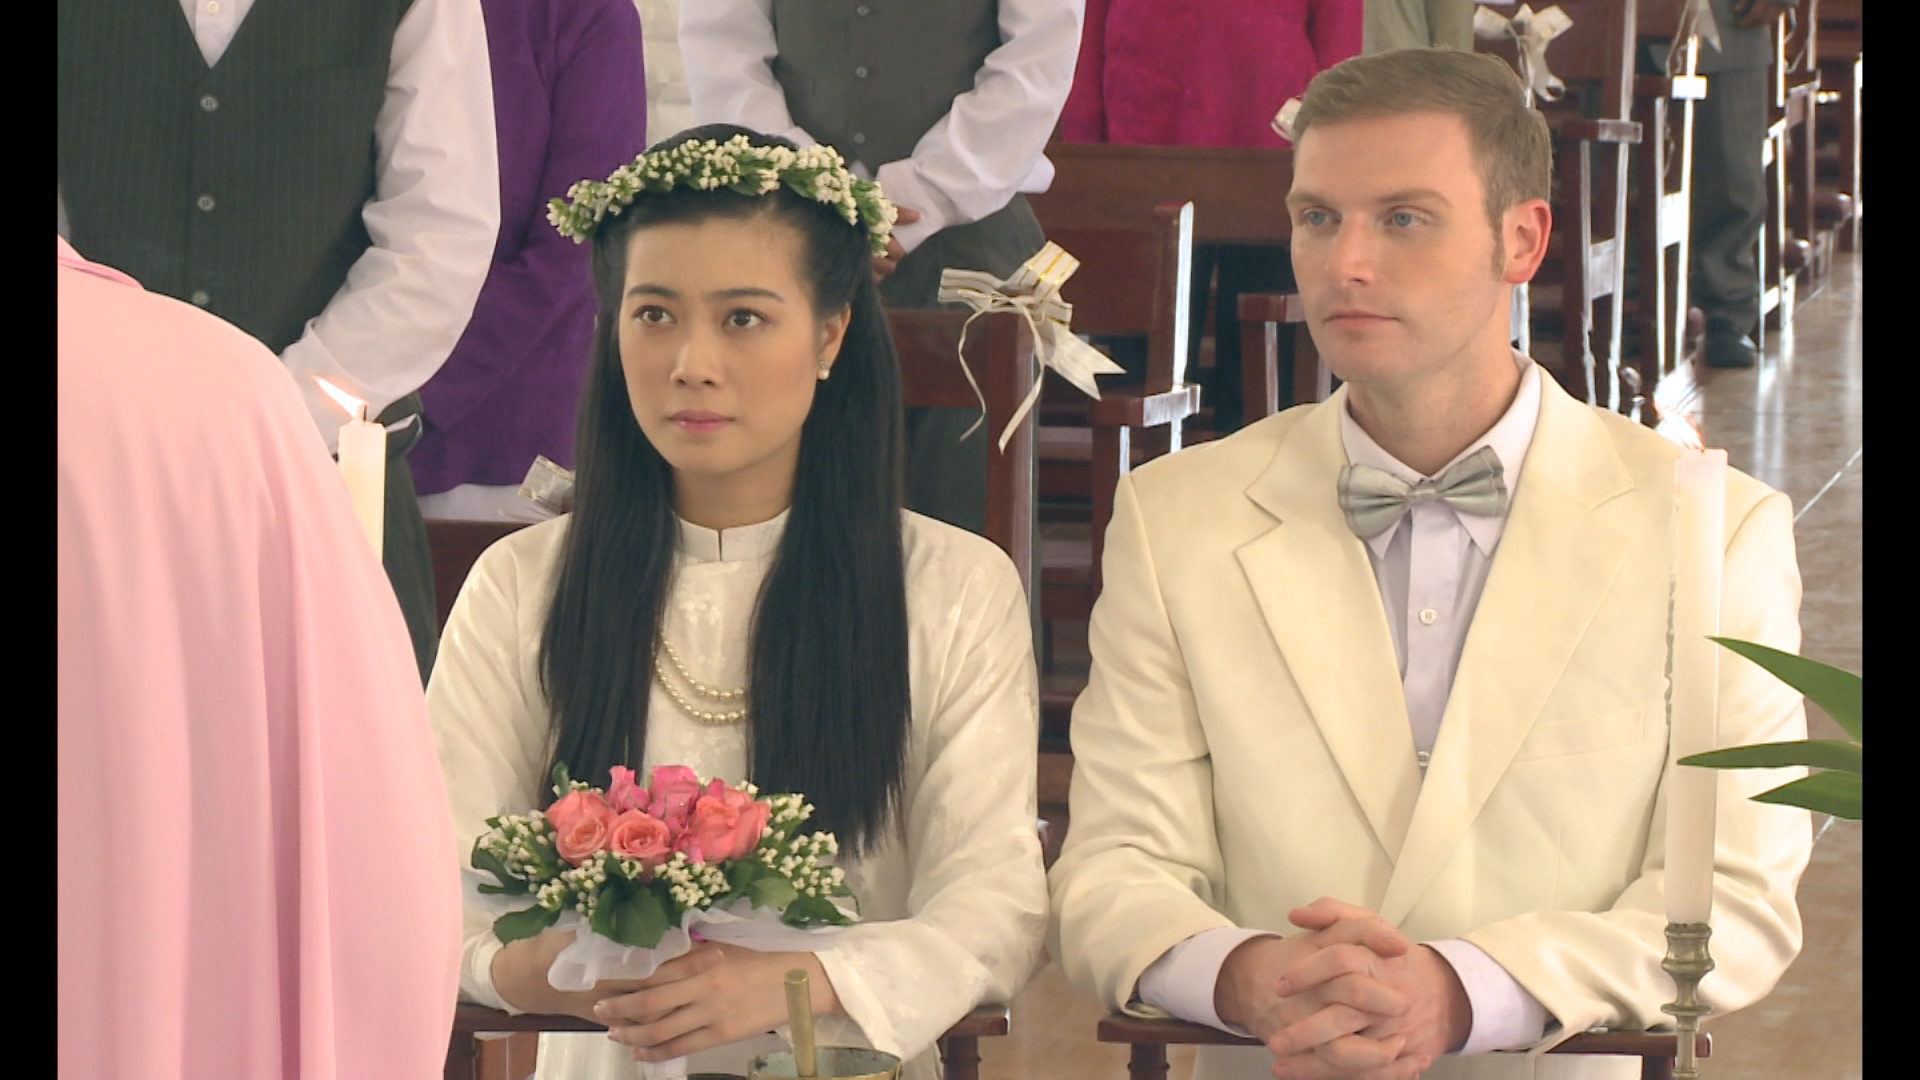 Cây nước mắt tập cuối: Kyo York và Linh Chi tổ chức đám cưới tại nhà thờ, nguyện bên nhau trọn đời